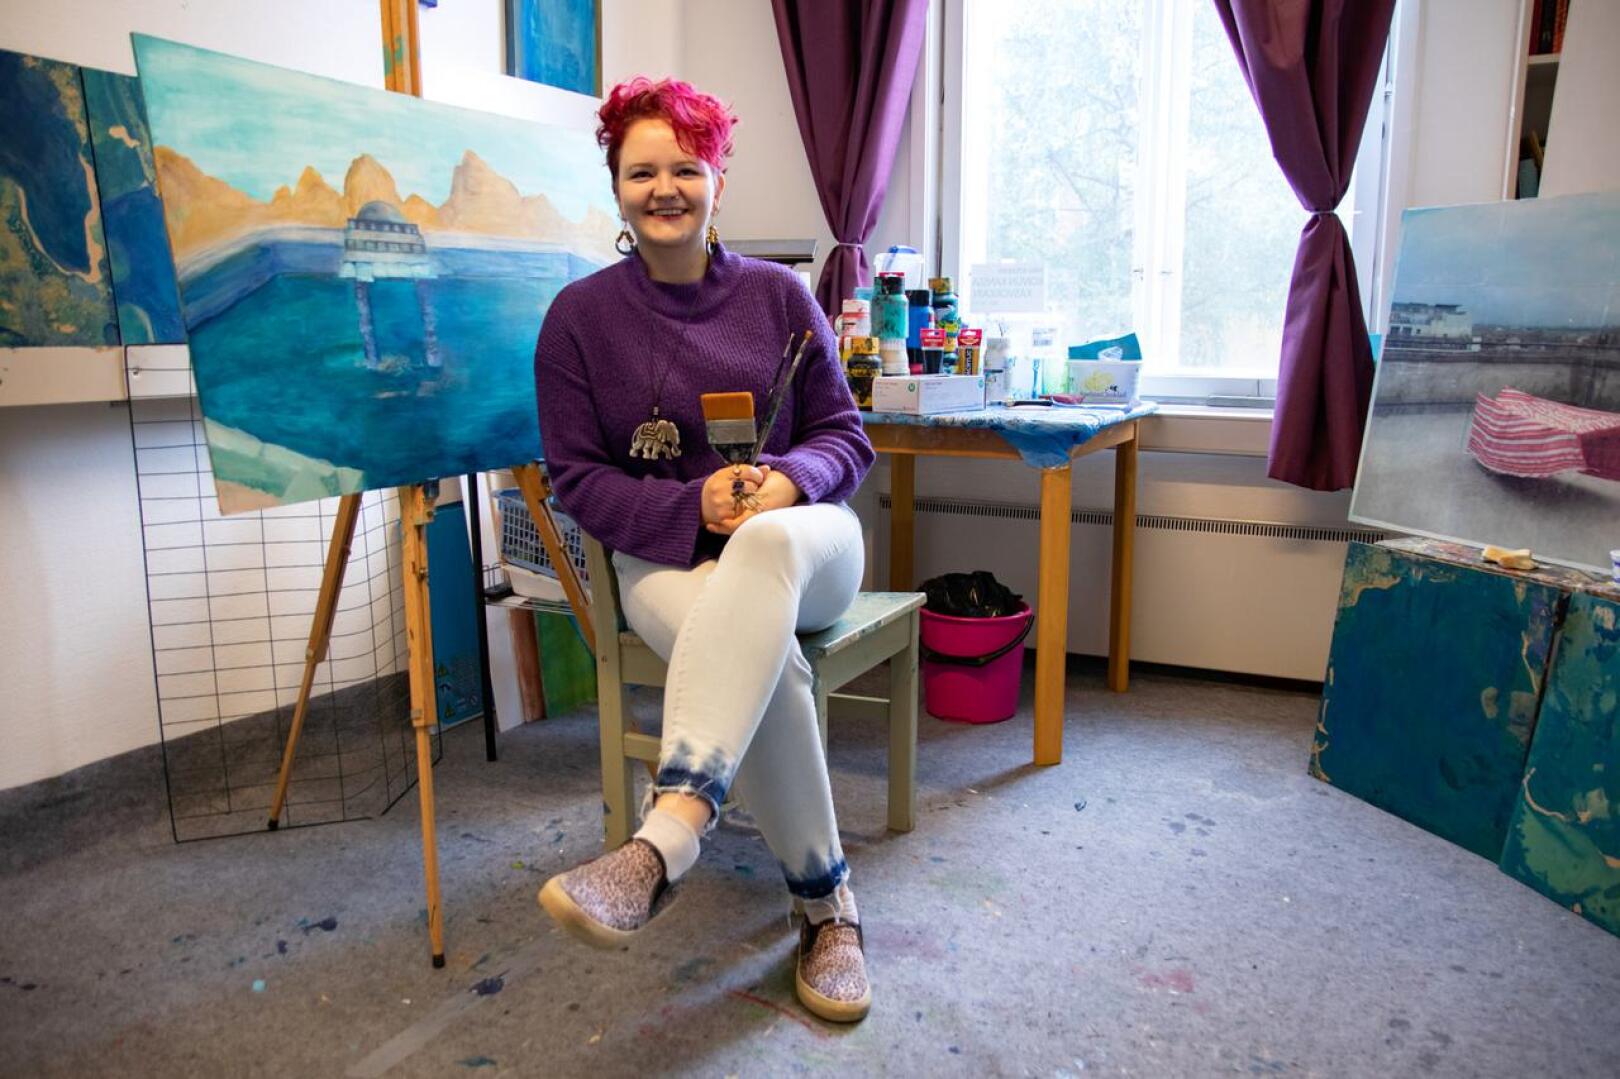 Mira Roivainen kertoo, että kuvataiteilijan työn suurimmat haasteet liittyvät työn itsenäisyyteen sekä talouspuoleen. Kuitenkin taiteilijan ammatti on elämäntapavalinta, joka kysyy rohkeutta elää omalla tavallaan.